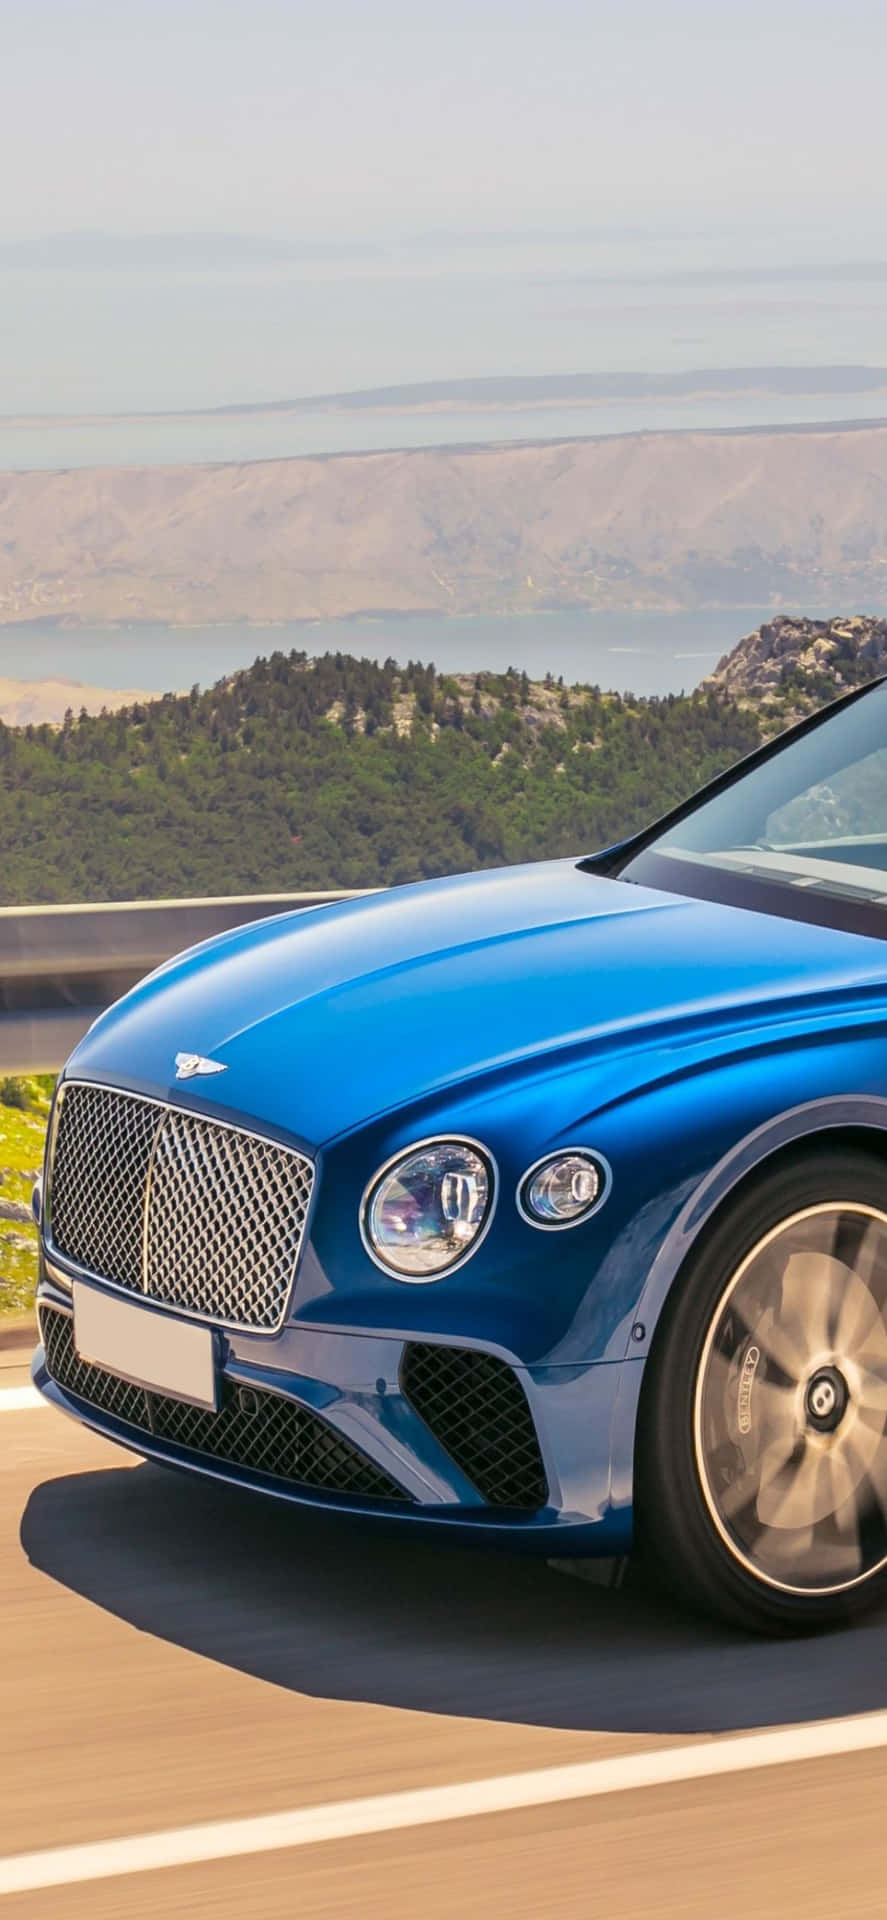 Experiencieo Verdadeiro Luxo Com O Iphone Xs Max Em Colaboração Com A Bentley.